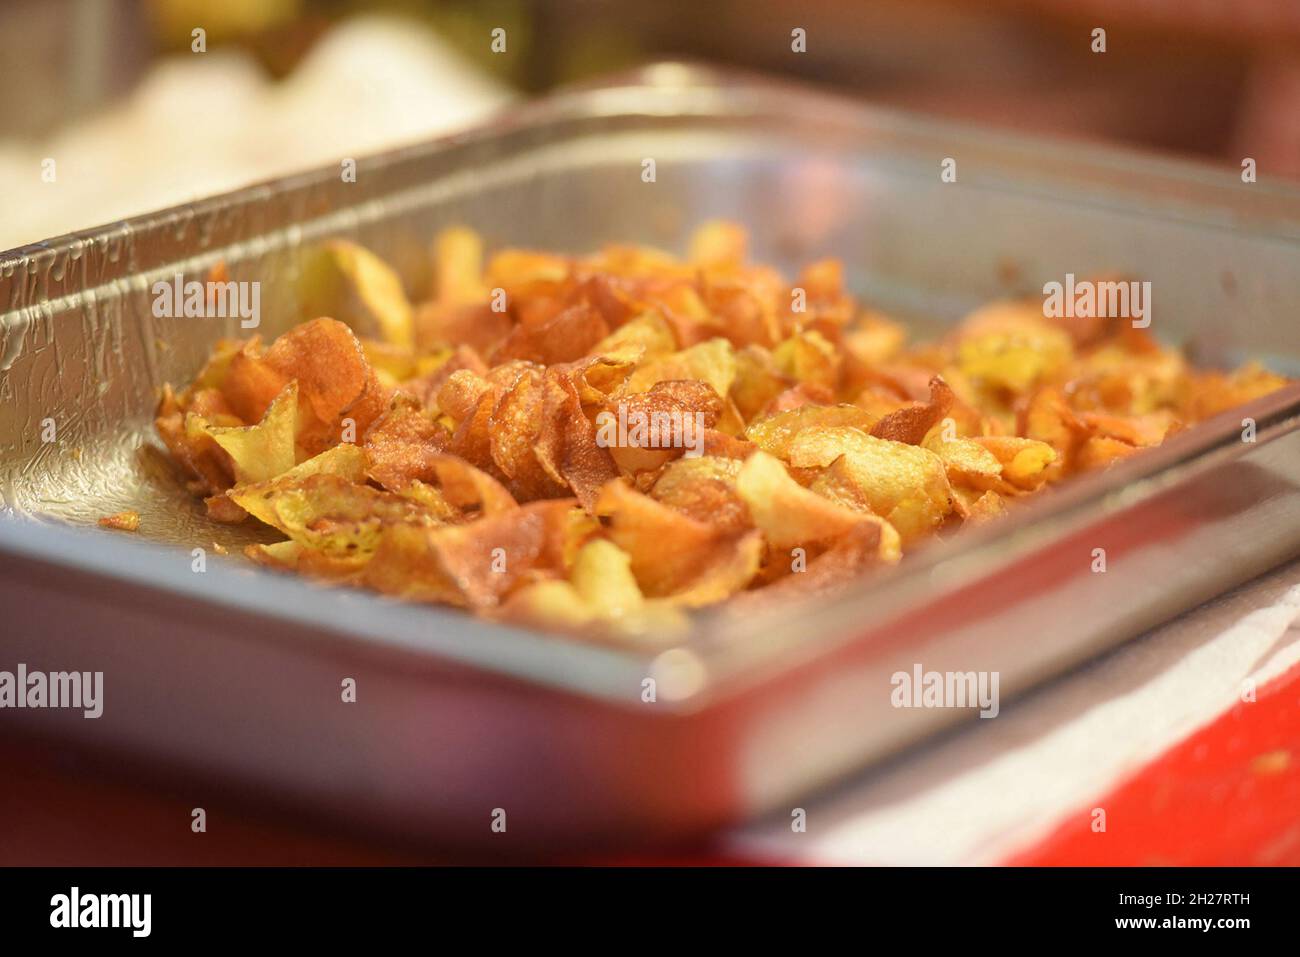 Herstellung von Kartoffel-Chips - Making potato chips Stock Photo